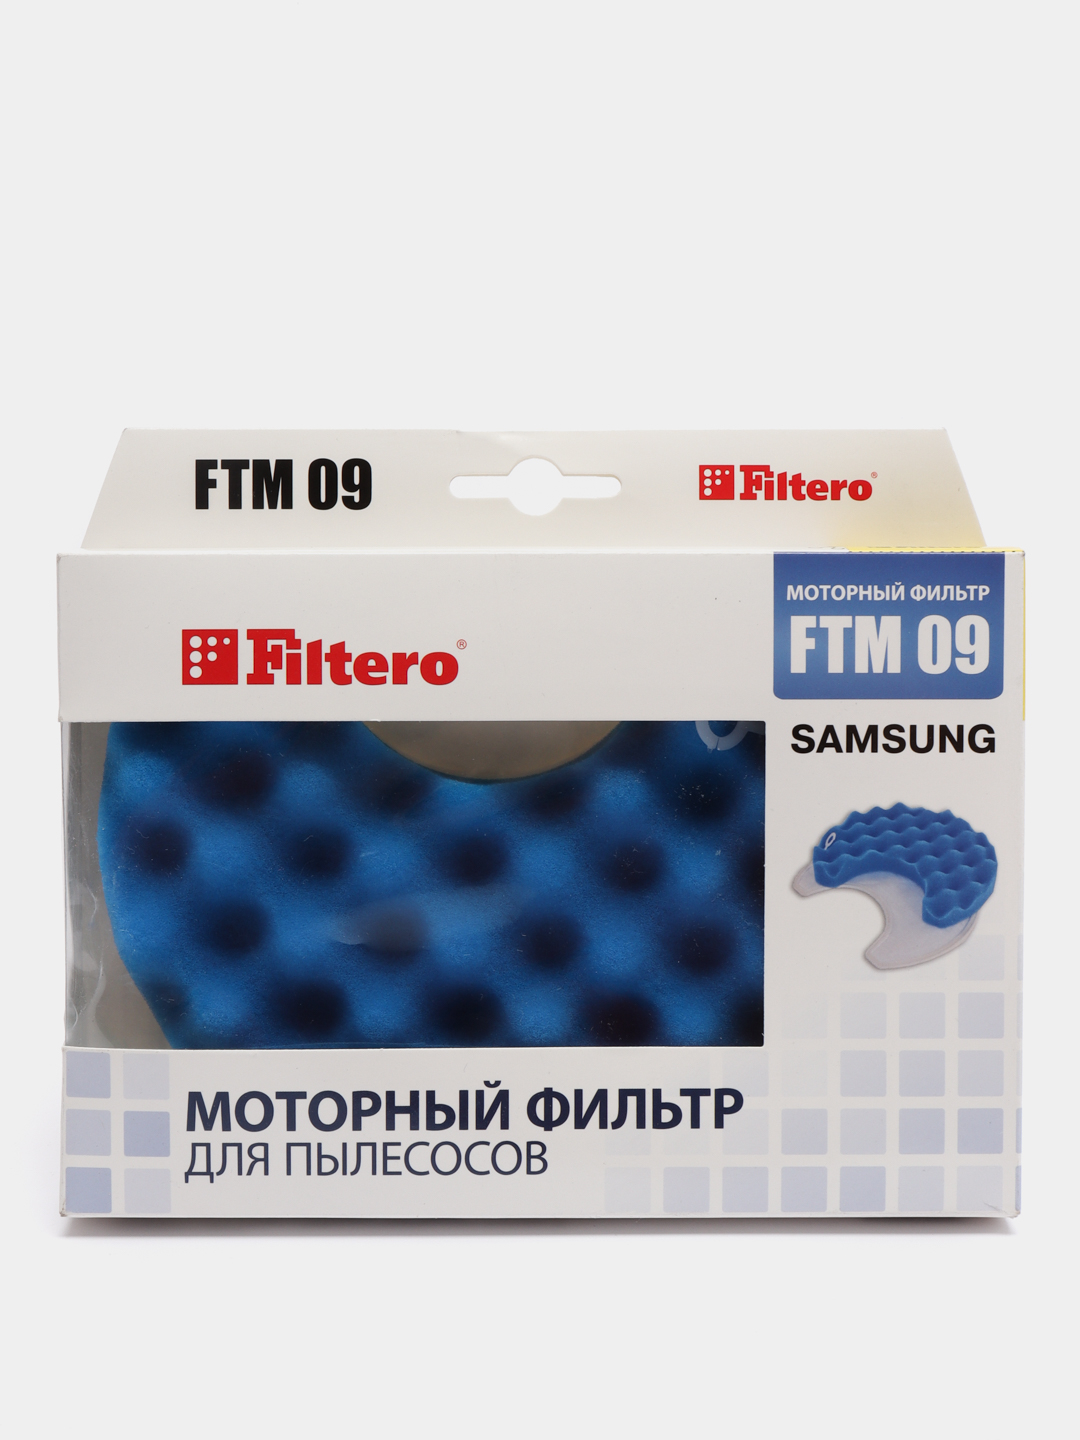  фильтр Filtero FTM 09 для пылесосов Samsung  по цене 625 .